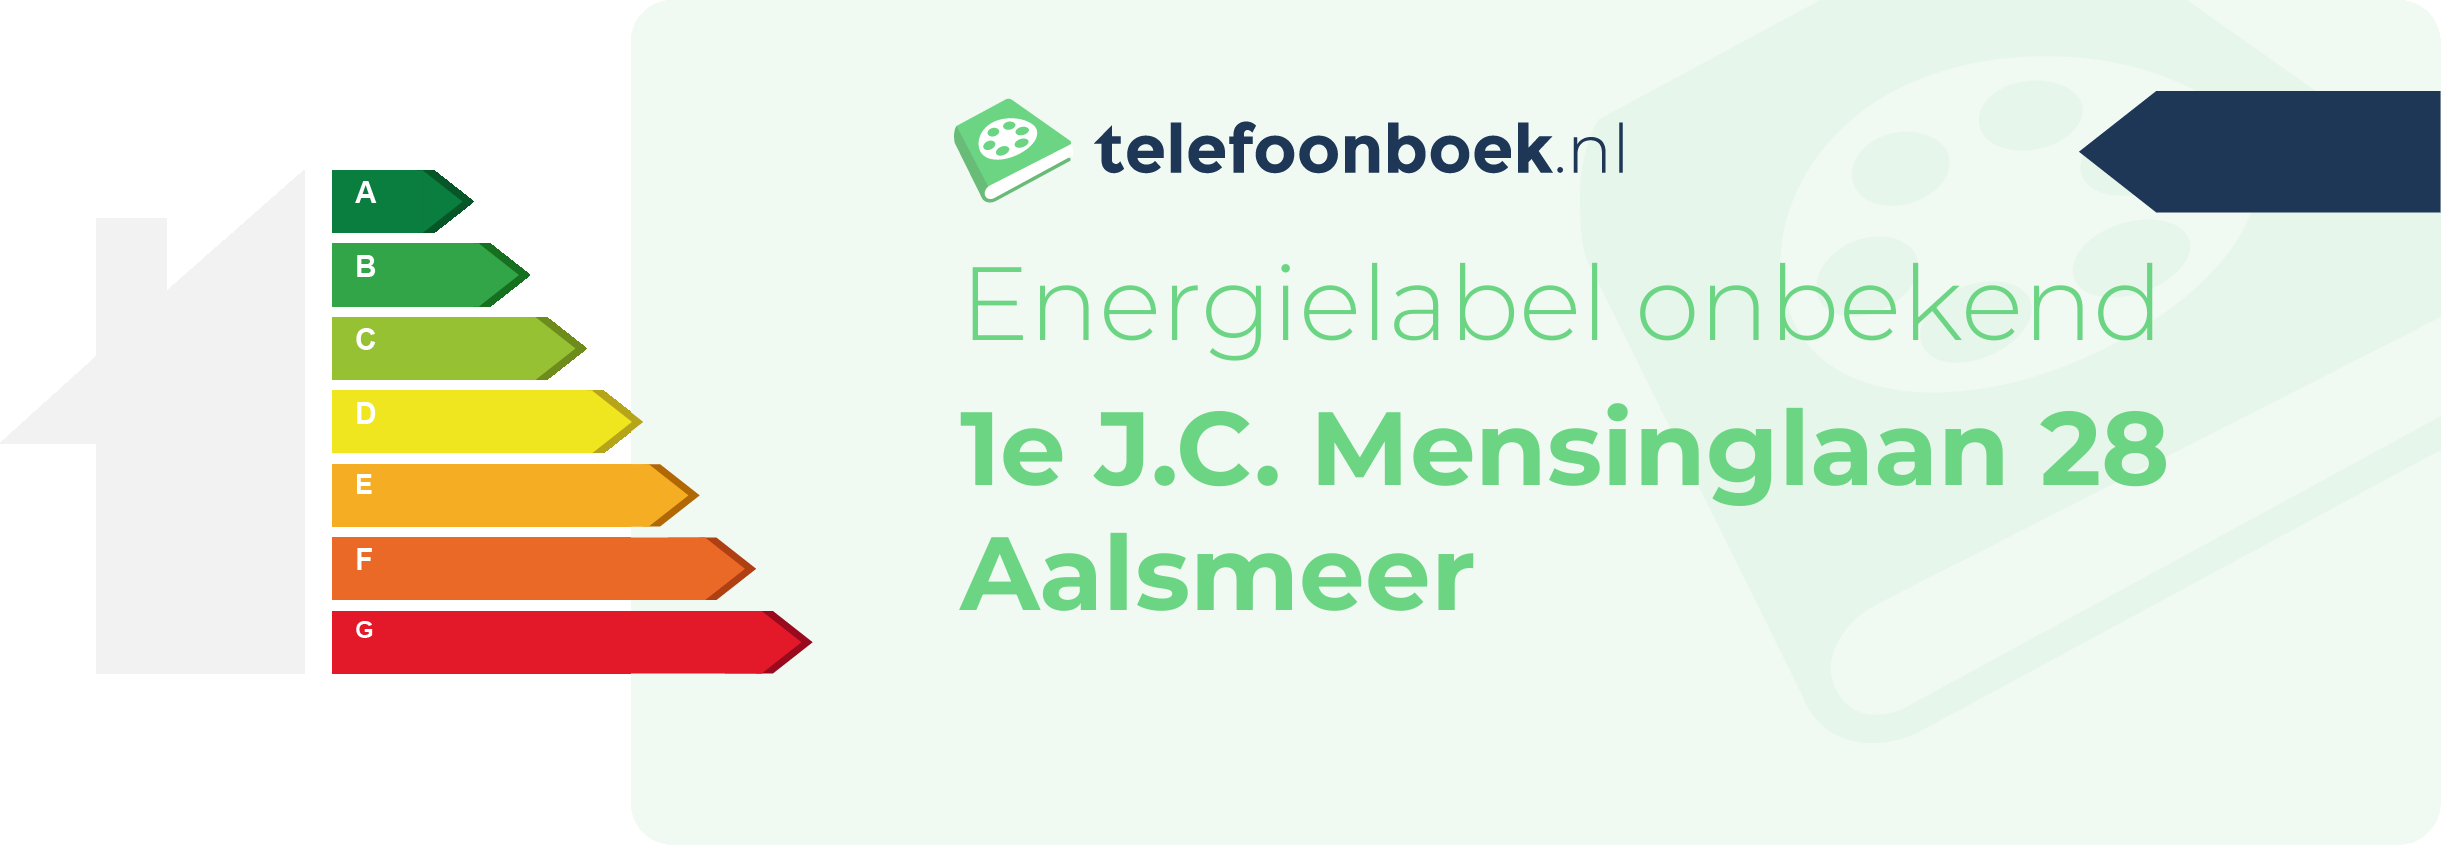 Energielabel 1e J.C. Mensinglaan 28 Aalsmeer